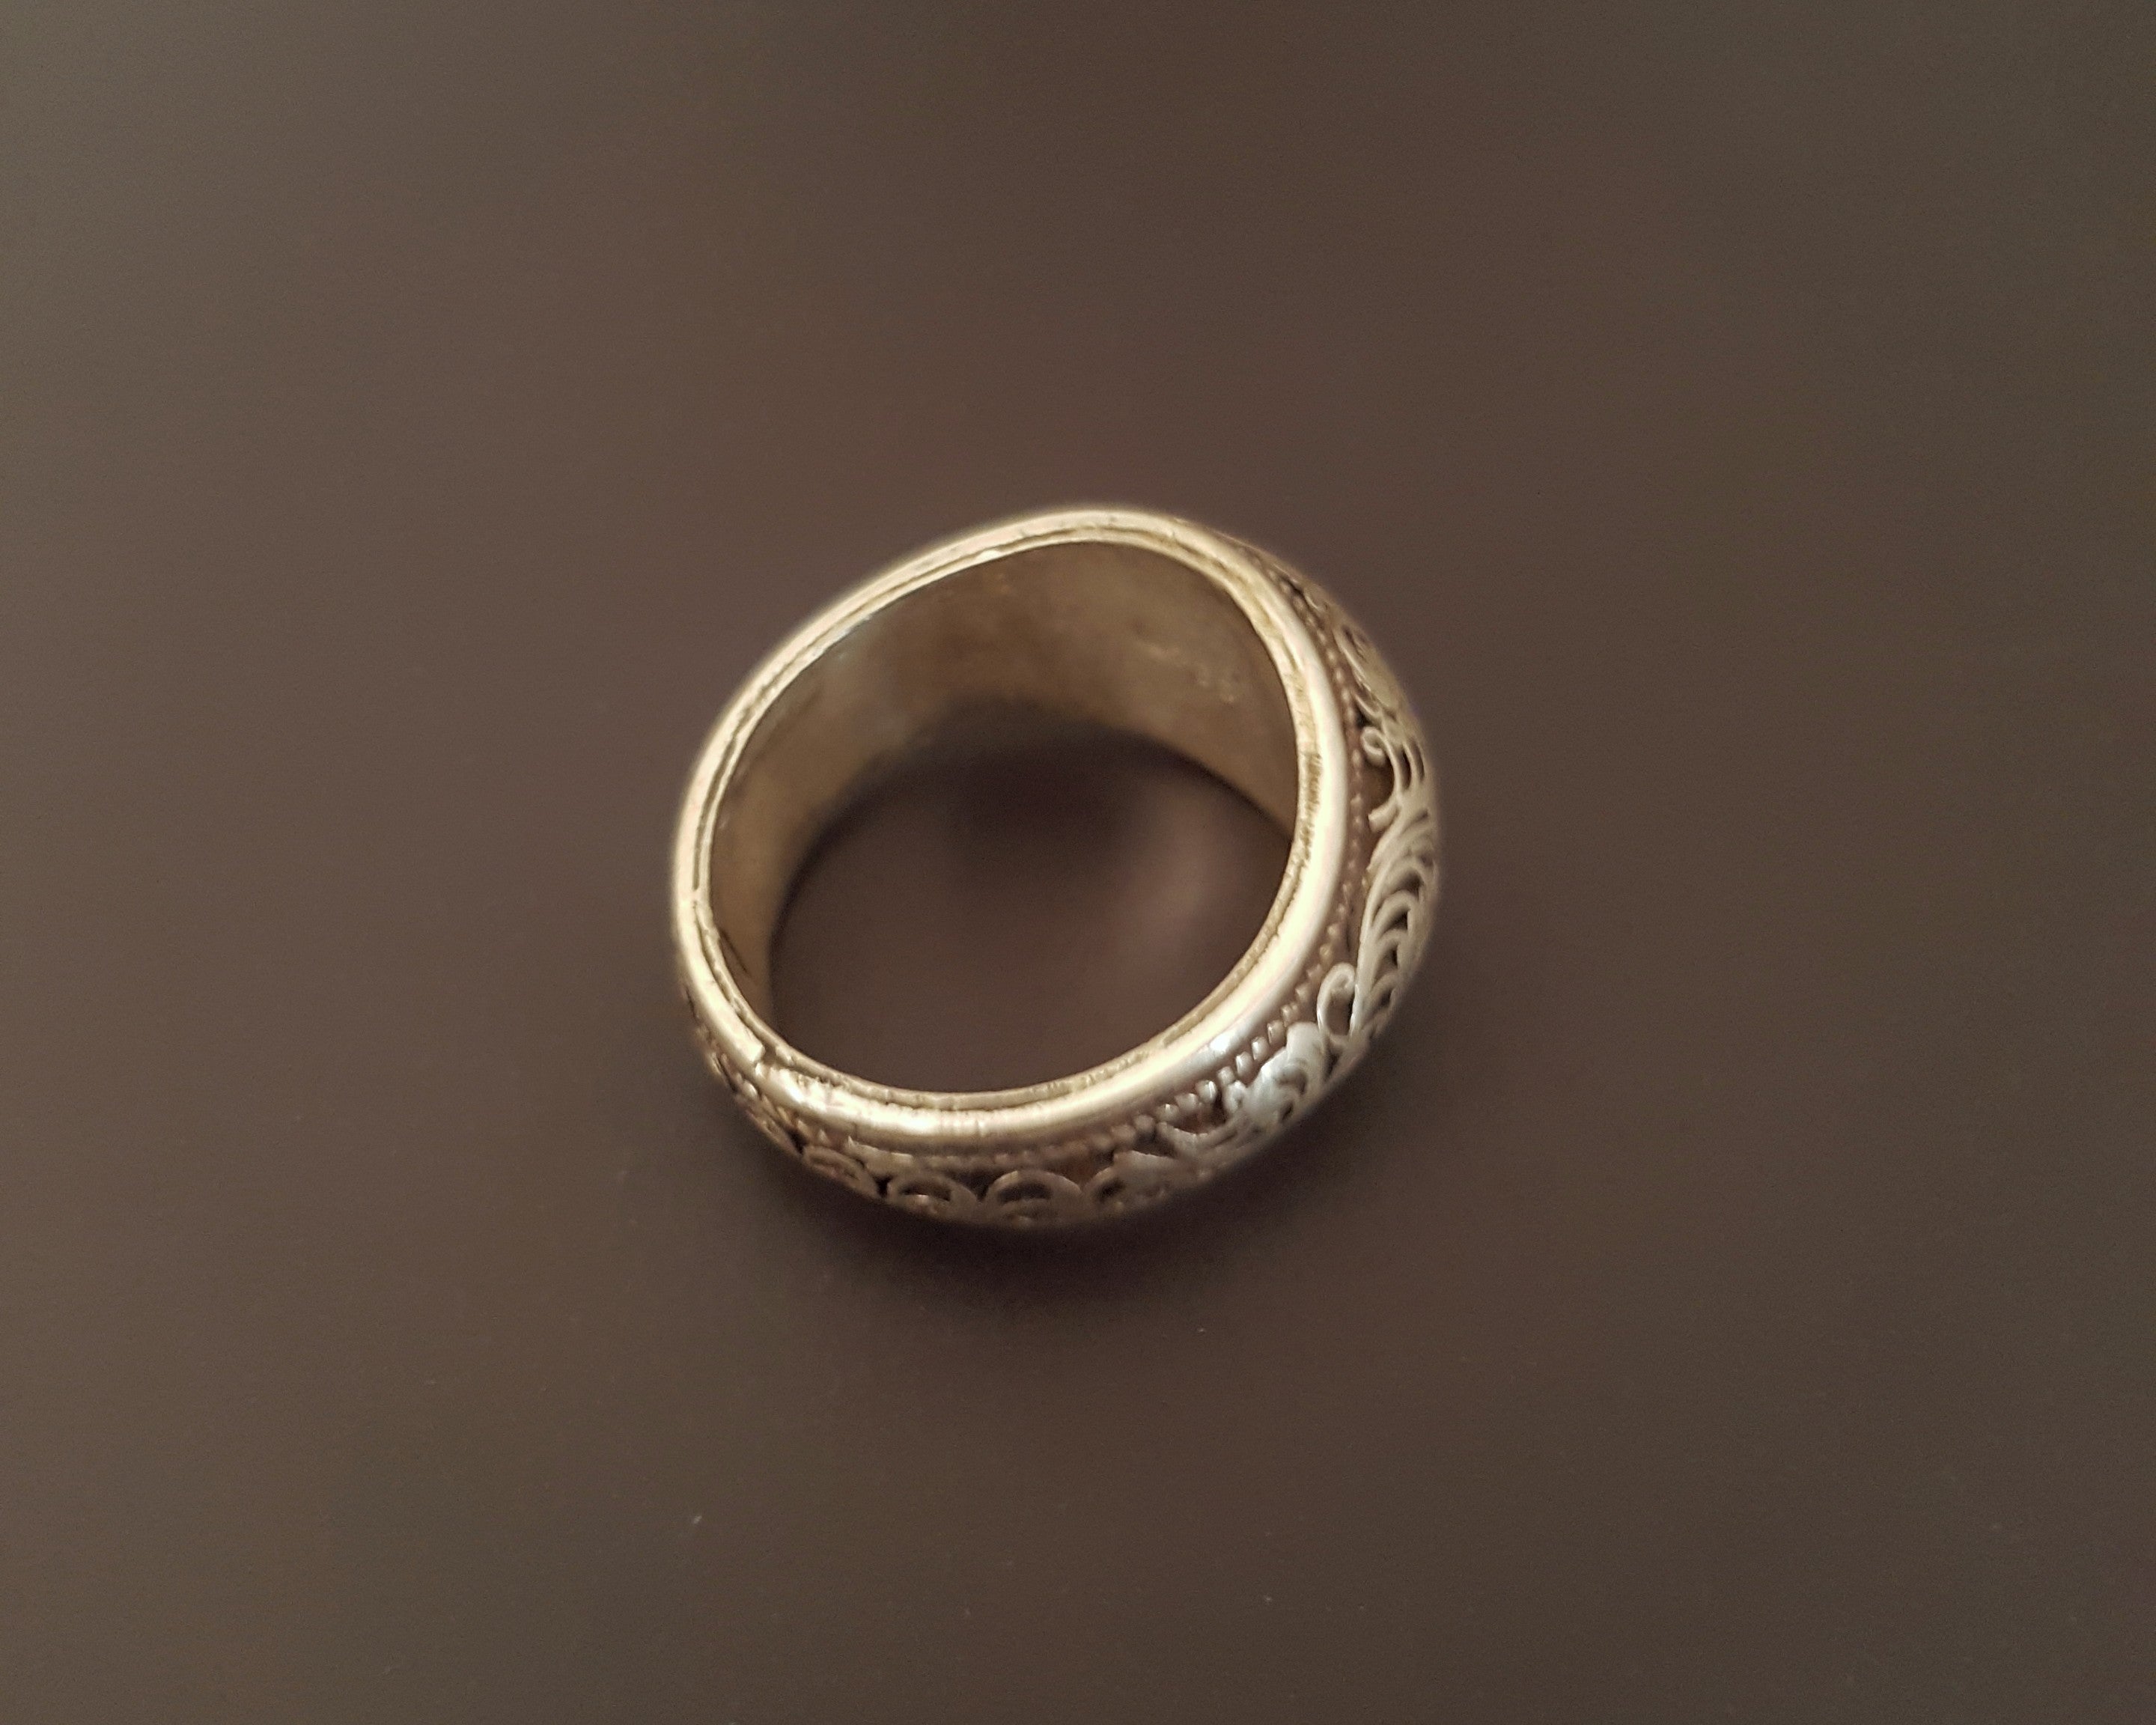 Nepali Filigree Band Ring - Size 7.25